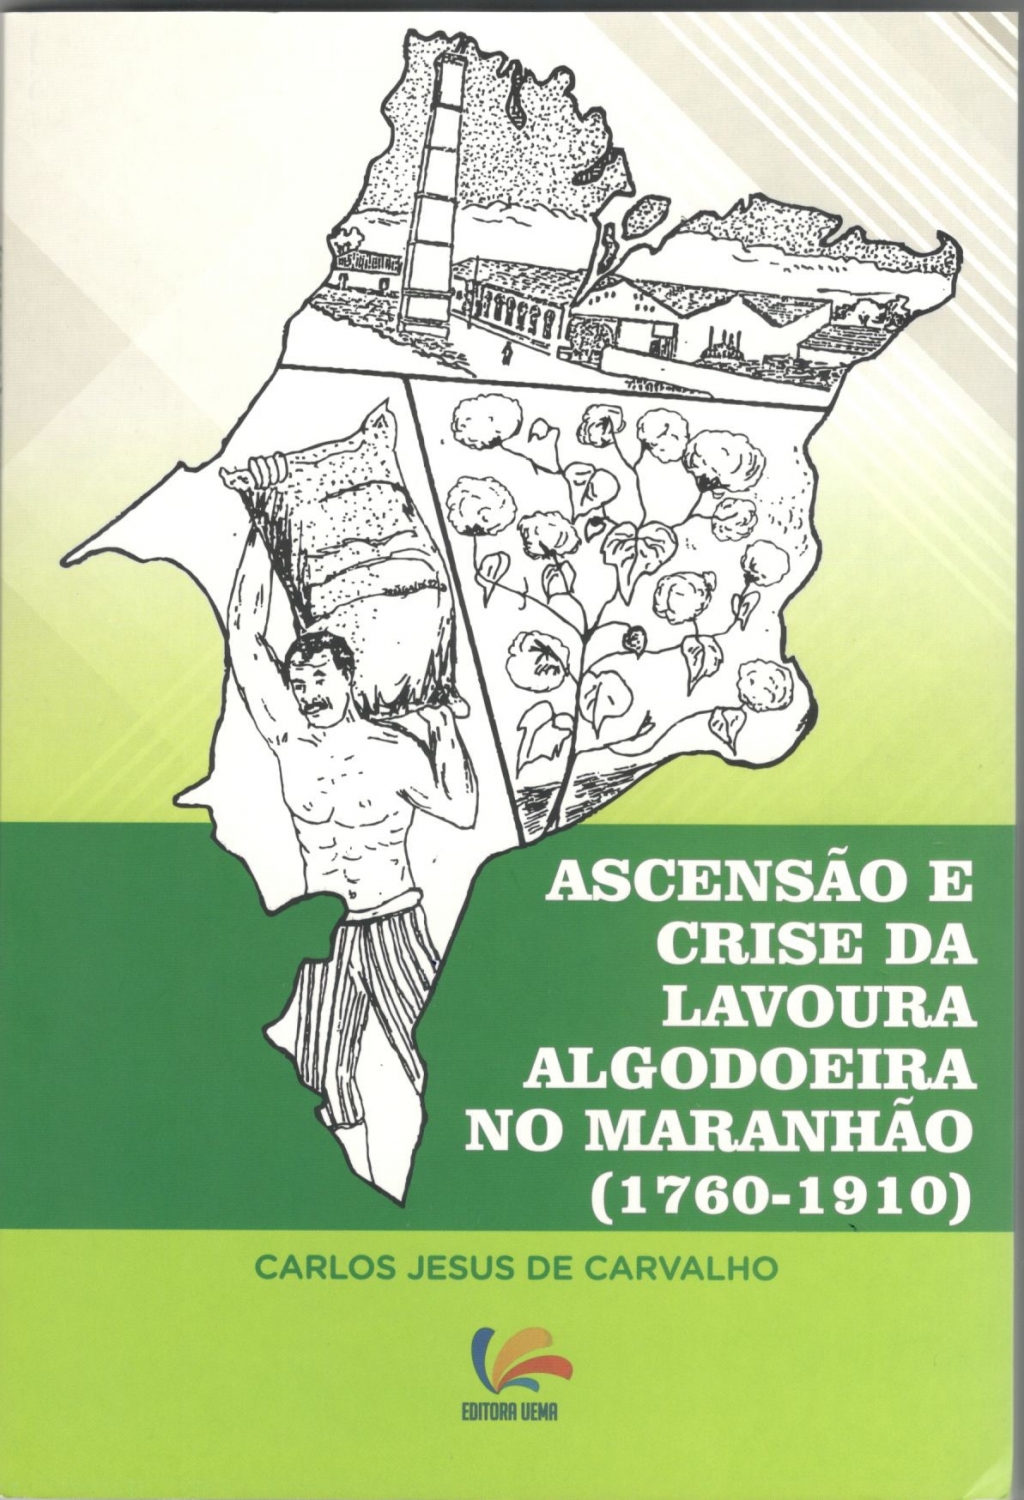 Ascensão e crise da lavoura algodoeira no Maranhão(1760-1910)